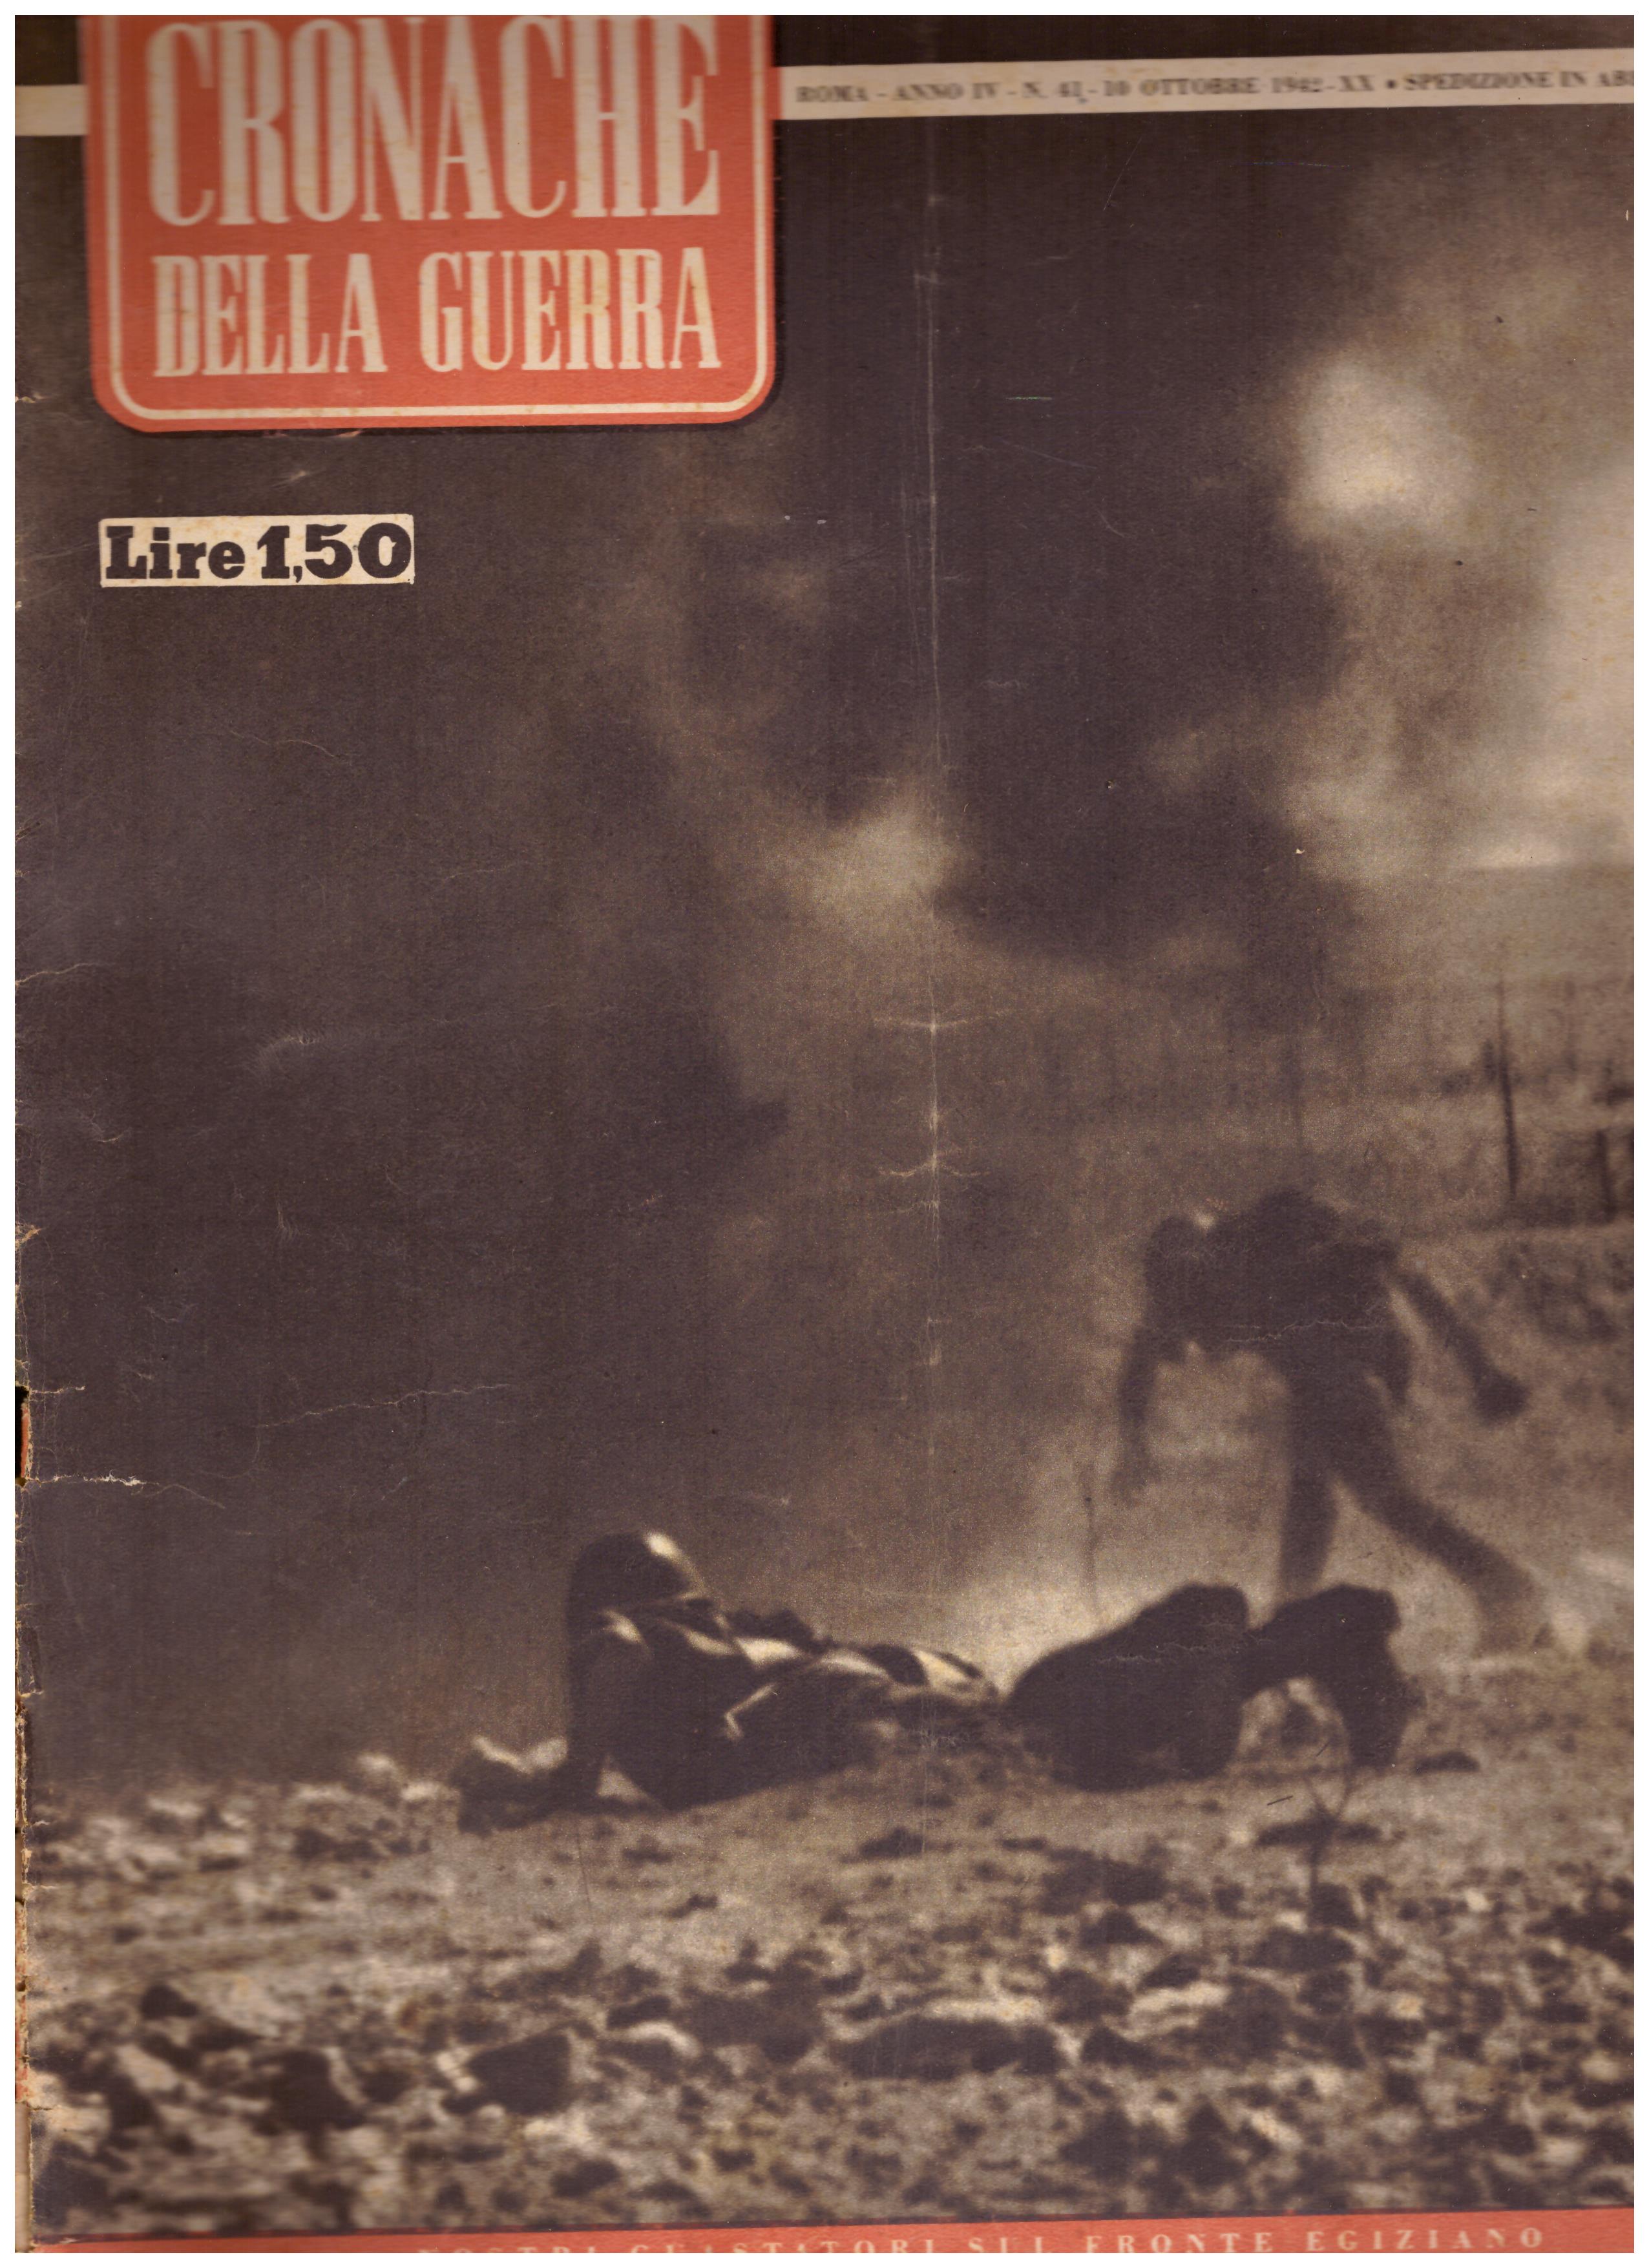 Titolo: Cronache della guerra, Roma Anno IV N.41 10 ottobre 1942  Autore : AA.VV.   Editore: Tumminelli editore Roma